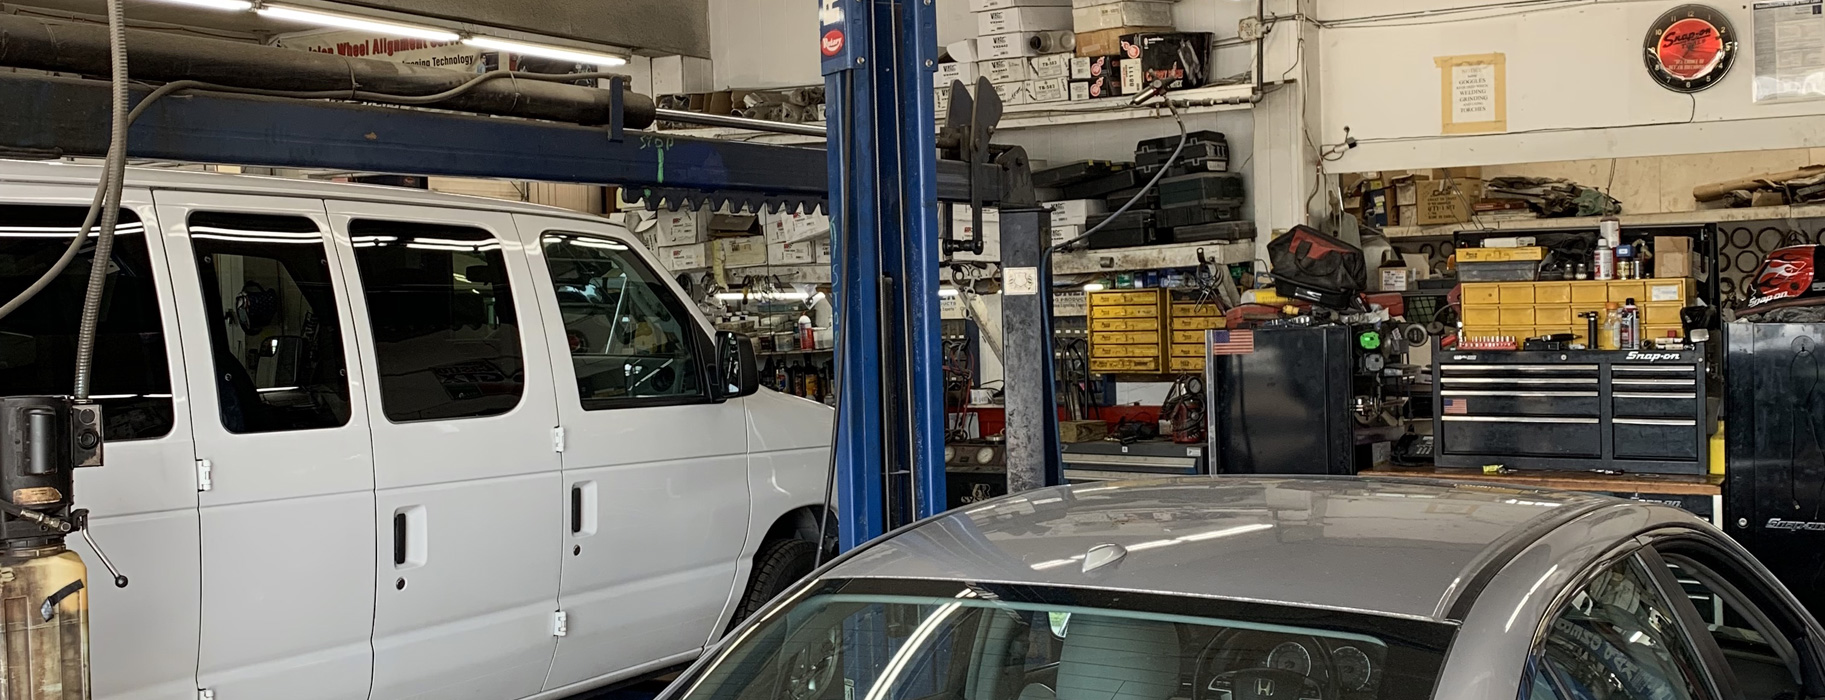 Supreme Muffler & Brake, Complete Auto & Truck Repair, Rockland, MA